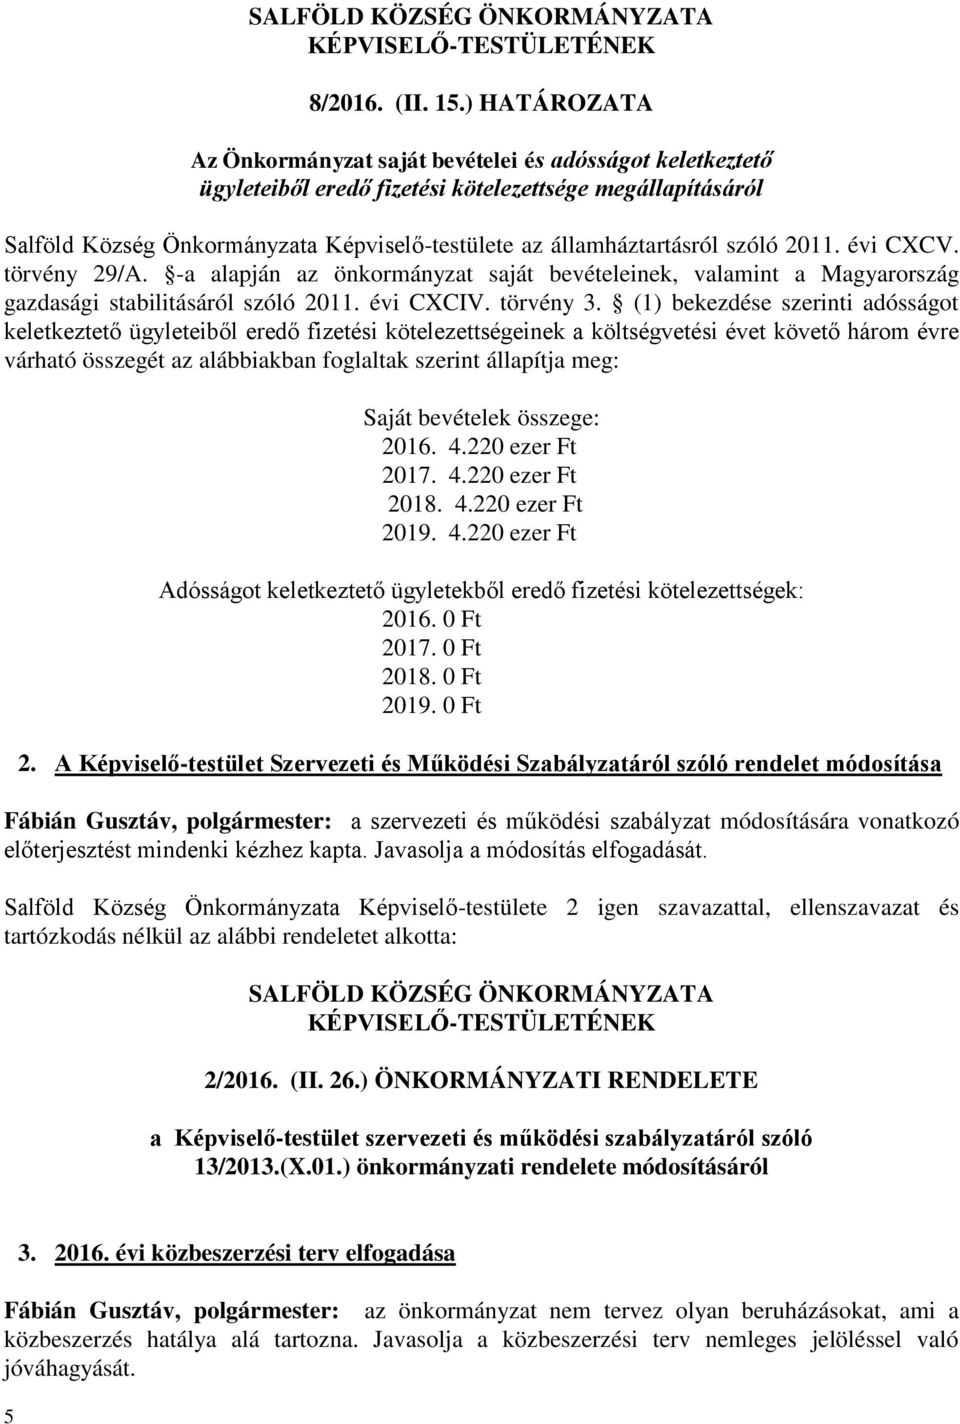 szóló 2011. évi CXCV. törvény 29/A. -a alapján az önkormányzat saját bevételeinek, valamint a Magyarország gazdasági stabilitásáról szóló 2011. évi CXCIV. törvény 3.